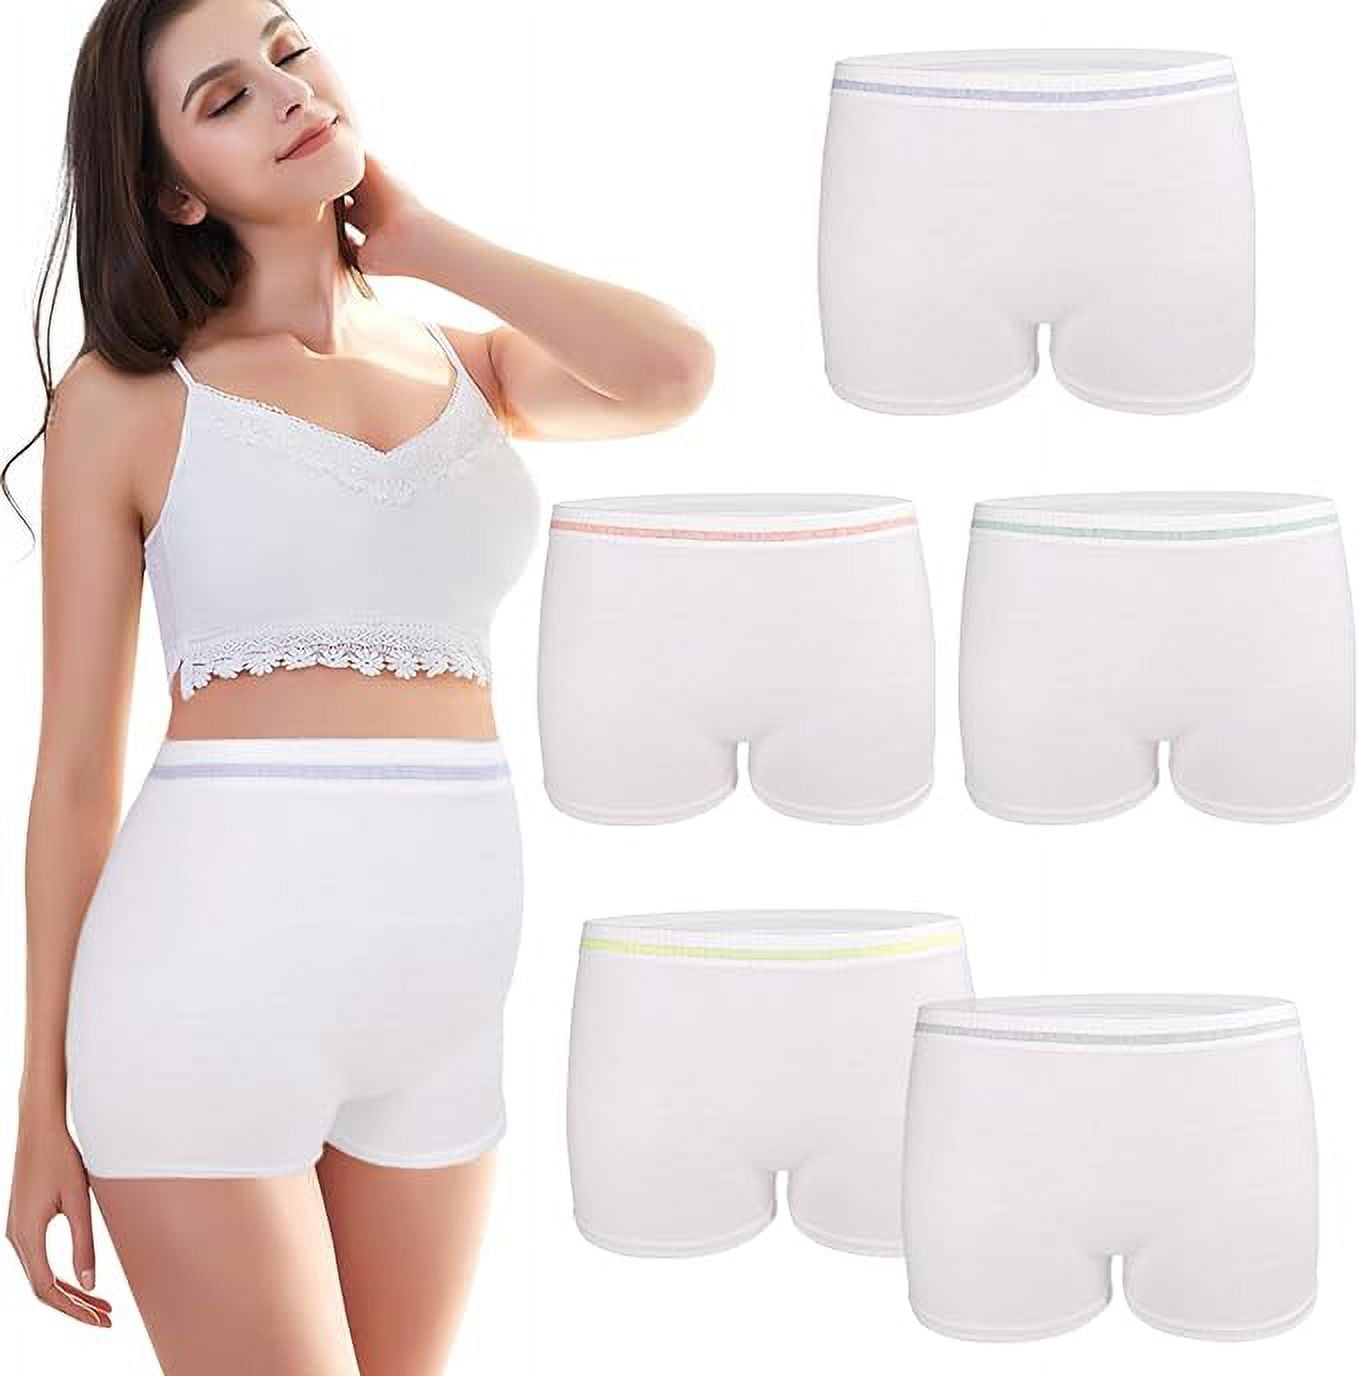 Mesh Underwear Postpartum 36 Count Disposable Postpartum Underwear